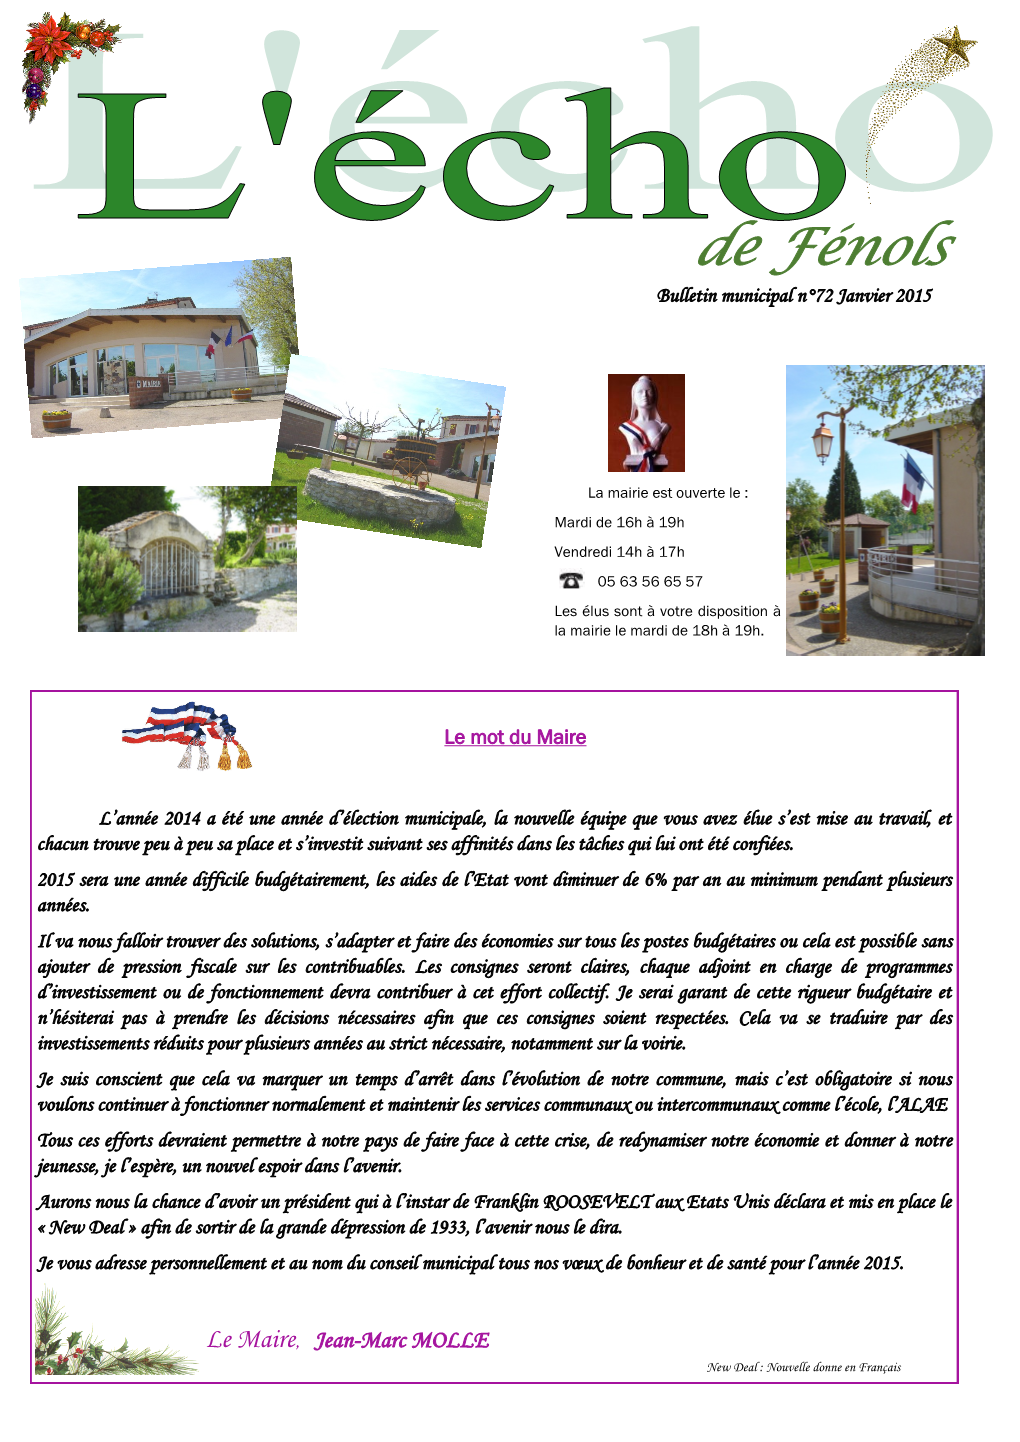 De Fénols Bulletin Municipal N°72 Janvier 2015